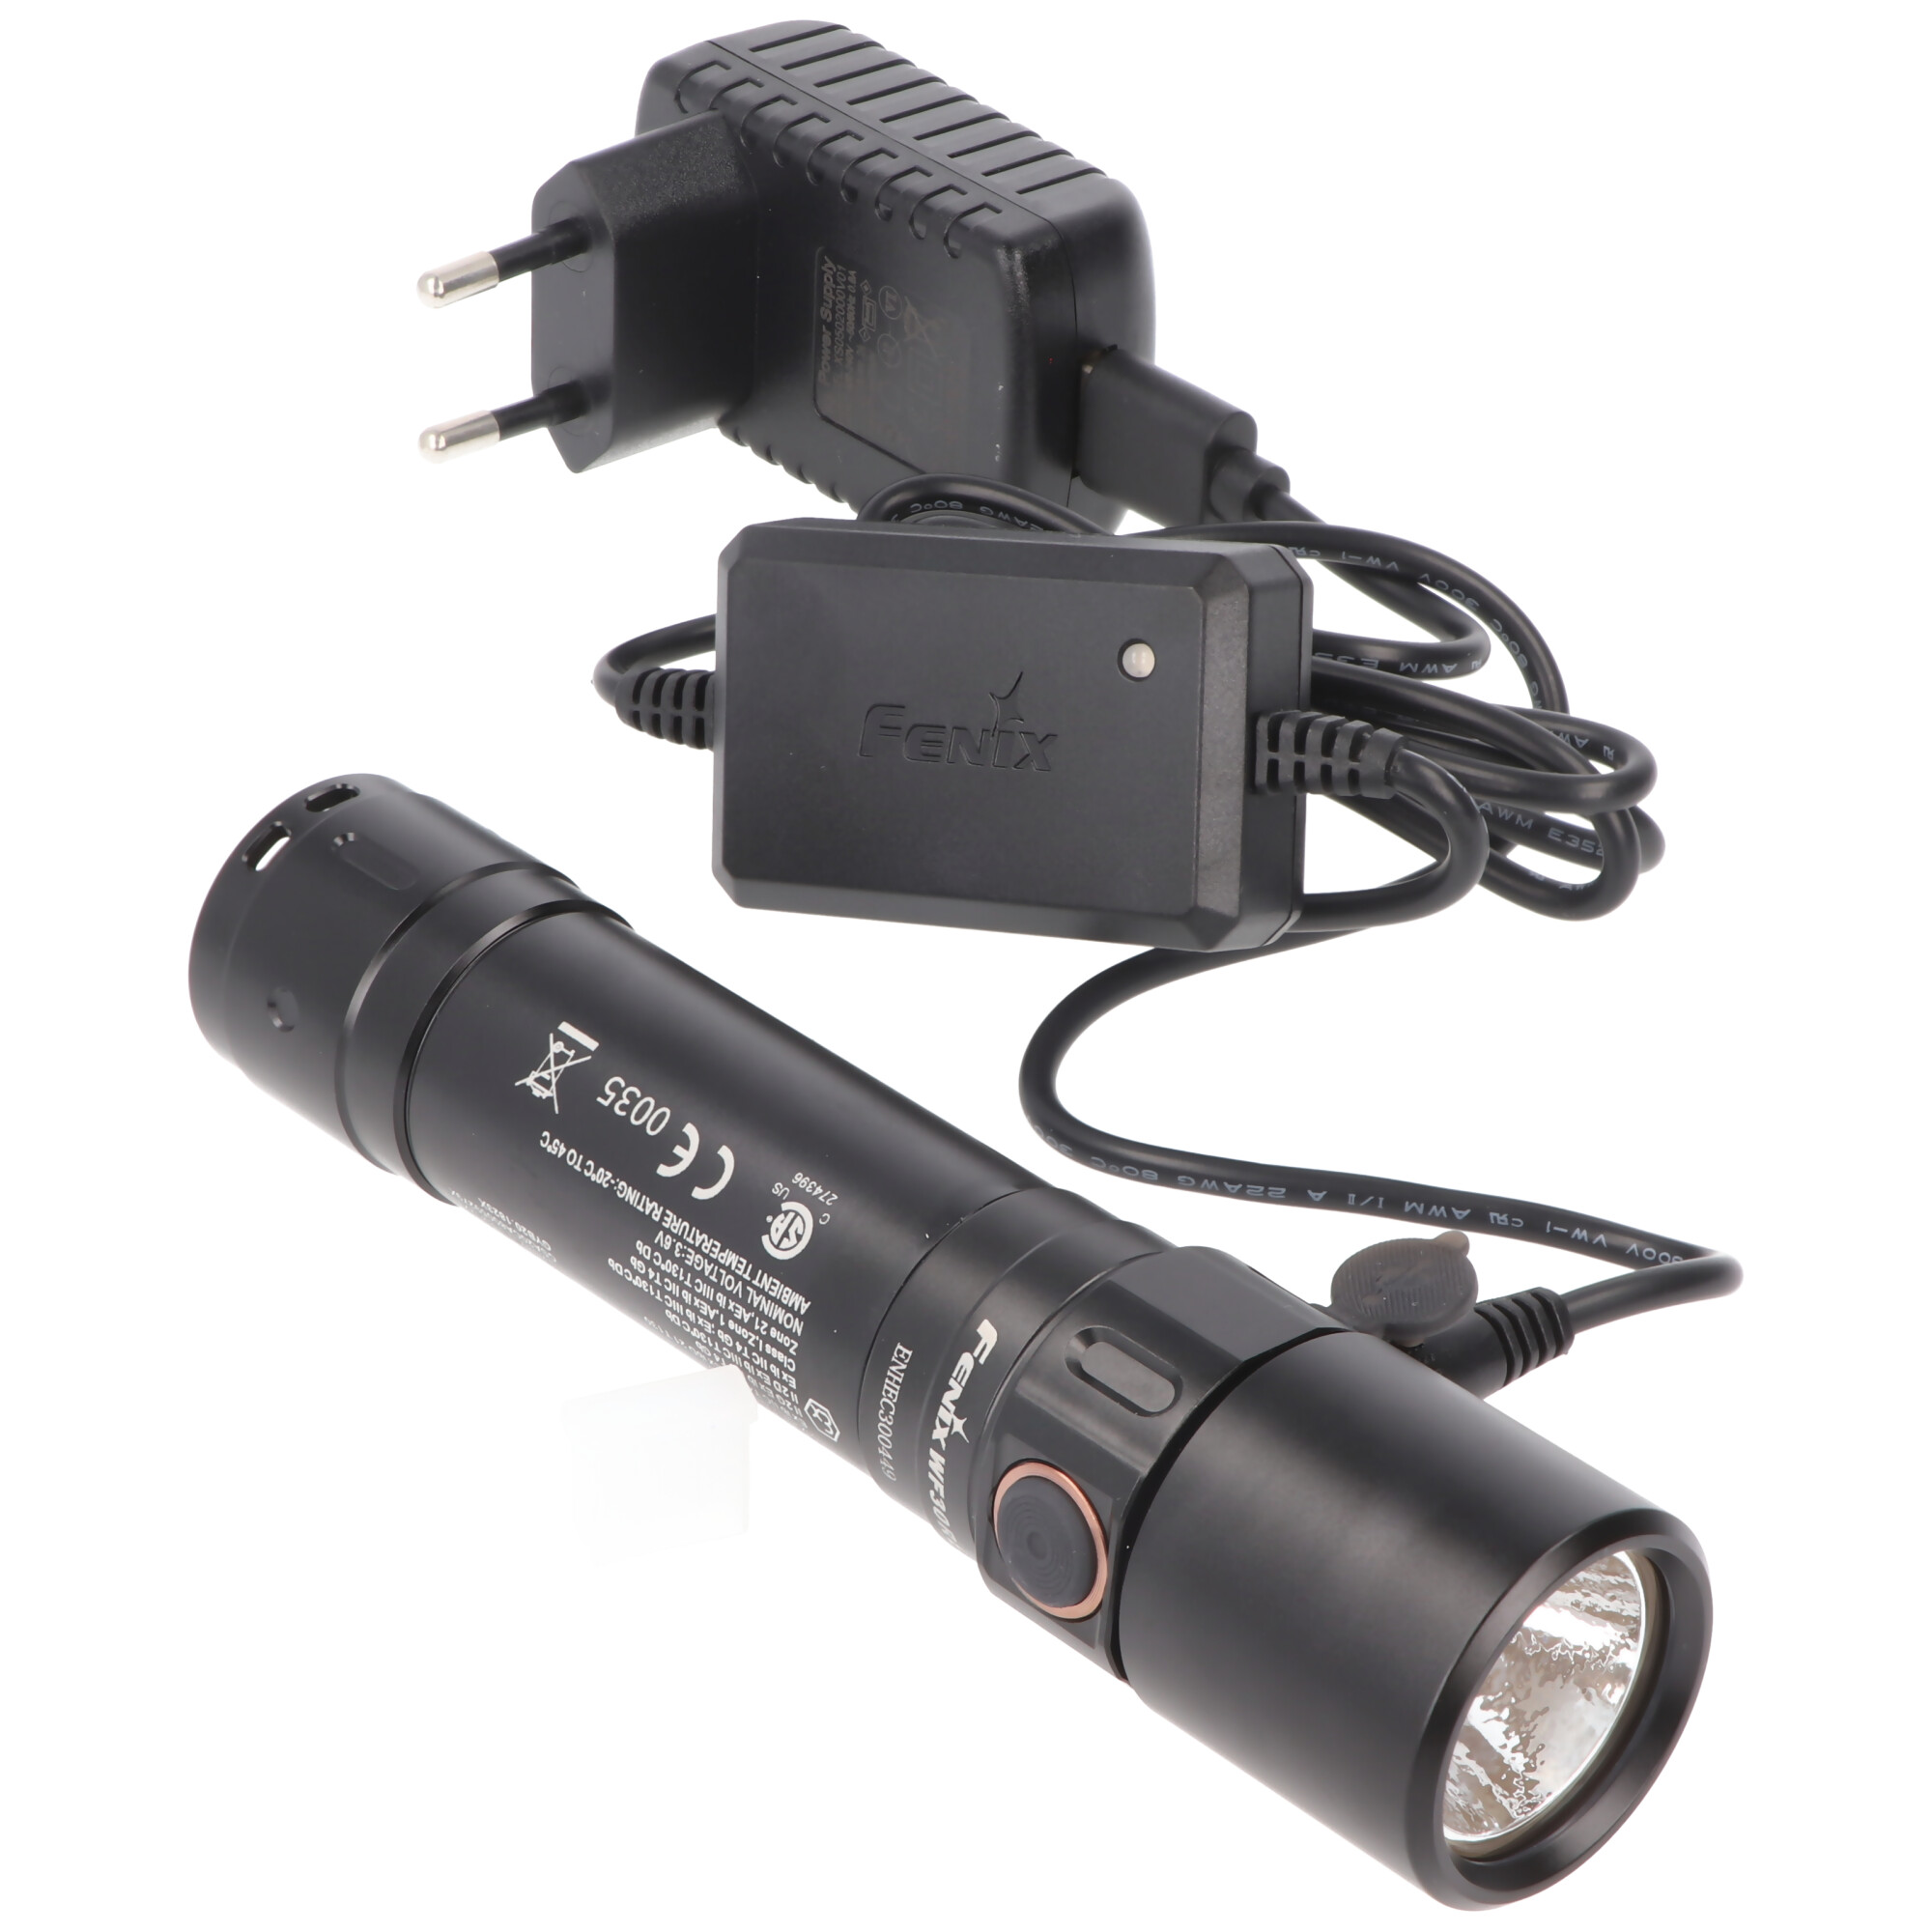 Fenix WF30RE die EX-Geschützte LED Taschenlampe inklusive Akku und Ladegerät